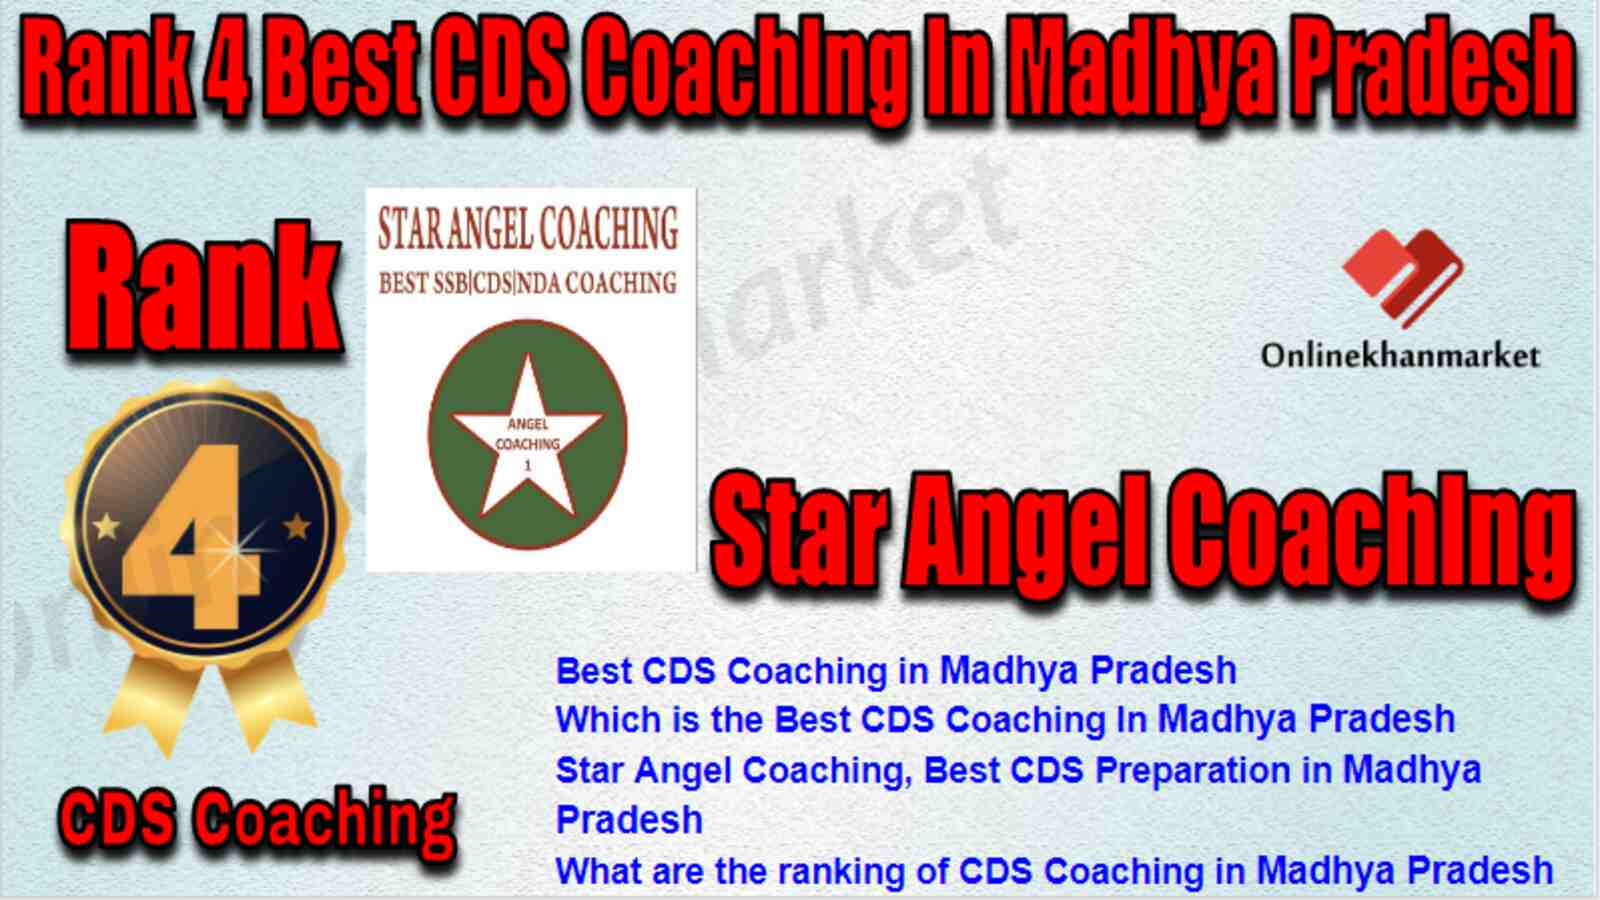 Rank 4 Best CDS Coaching in Madhya Pradesh